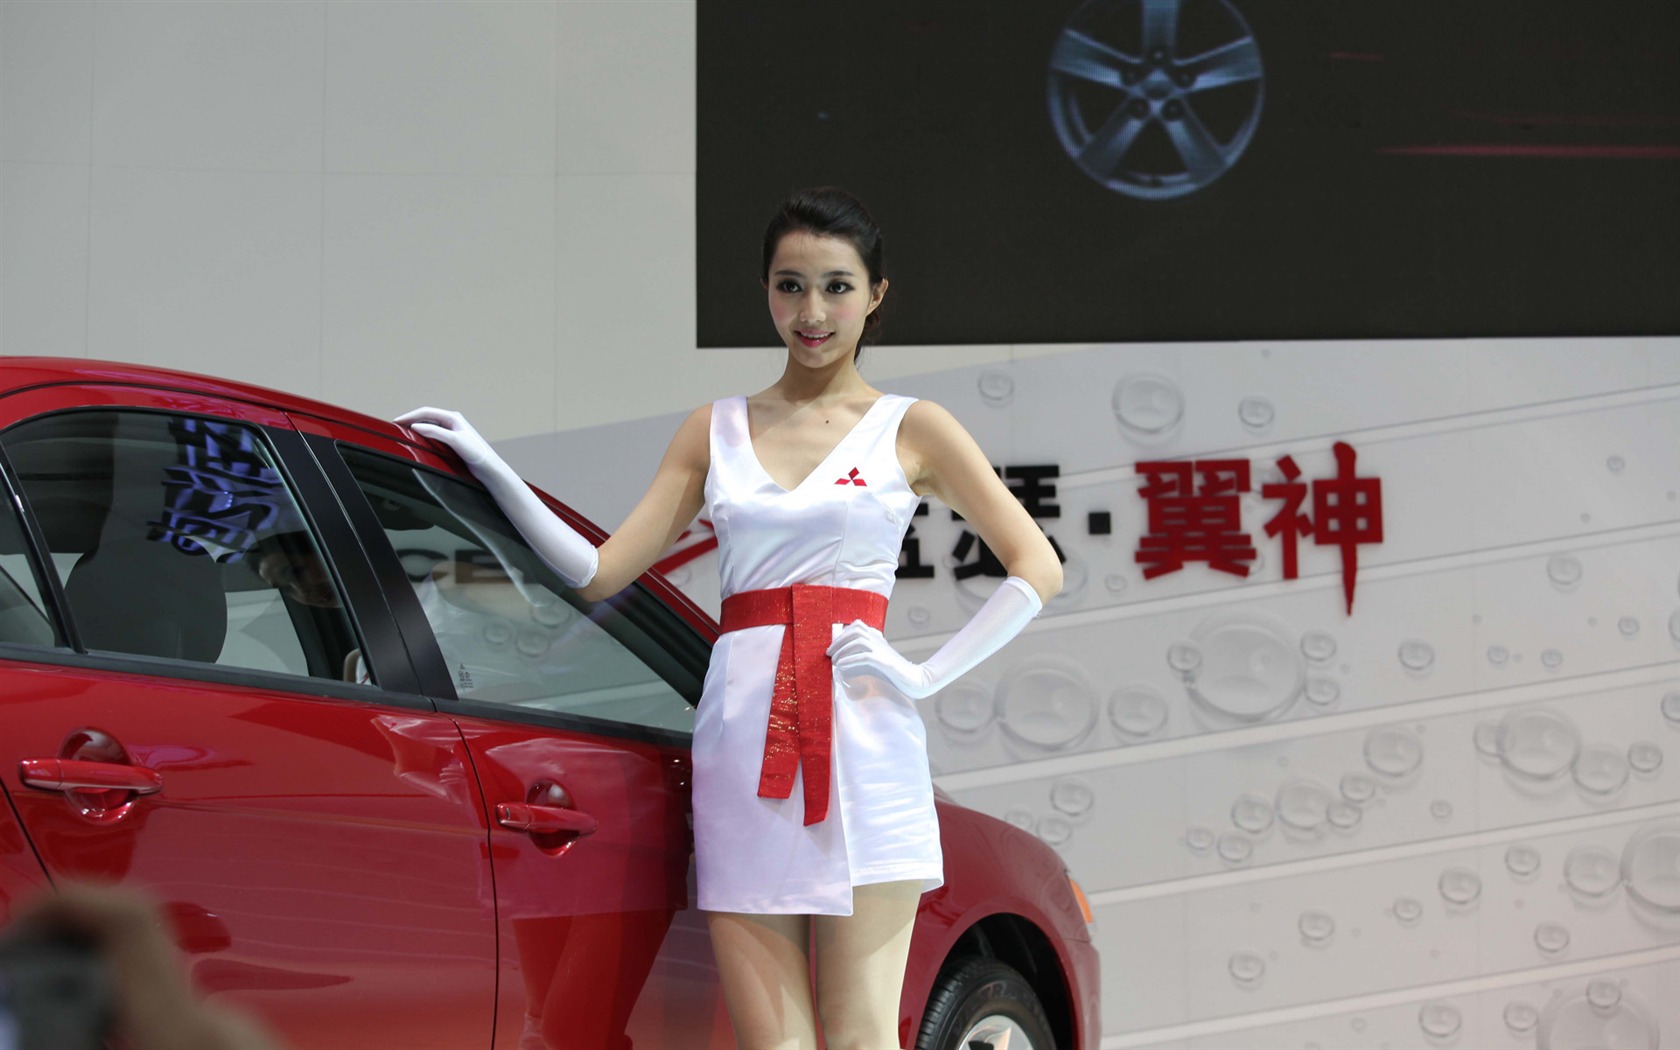 2010 v Pekingu Mezinárodním autosalonu krása (2) (vítr honí mraky práce) #30 - 1680x1050